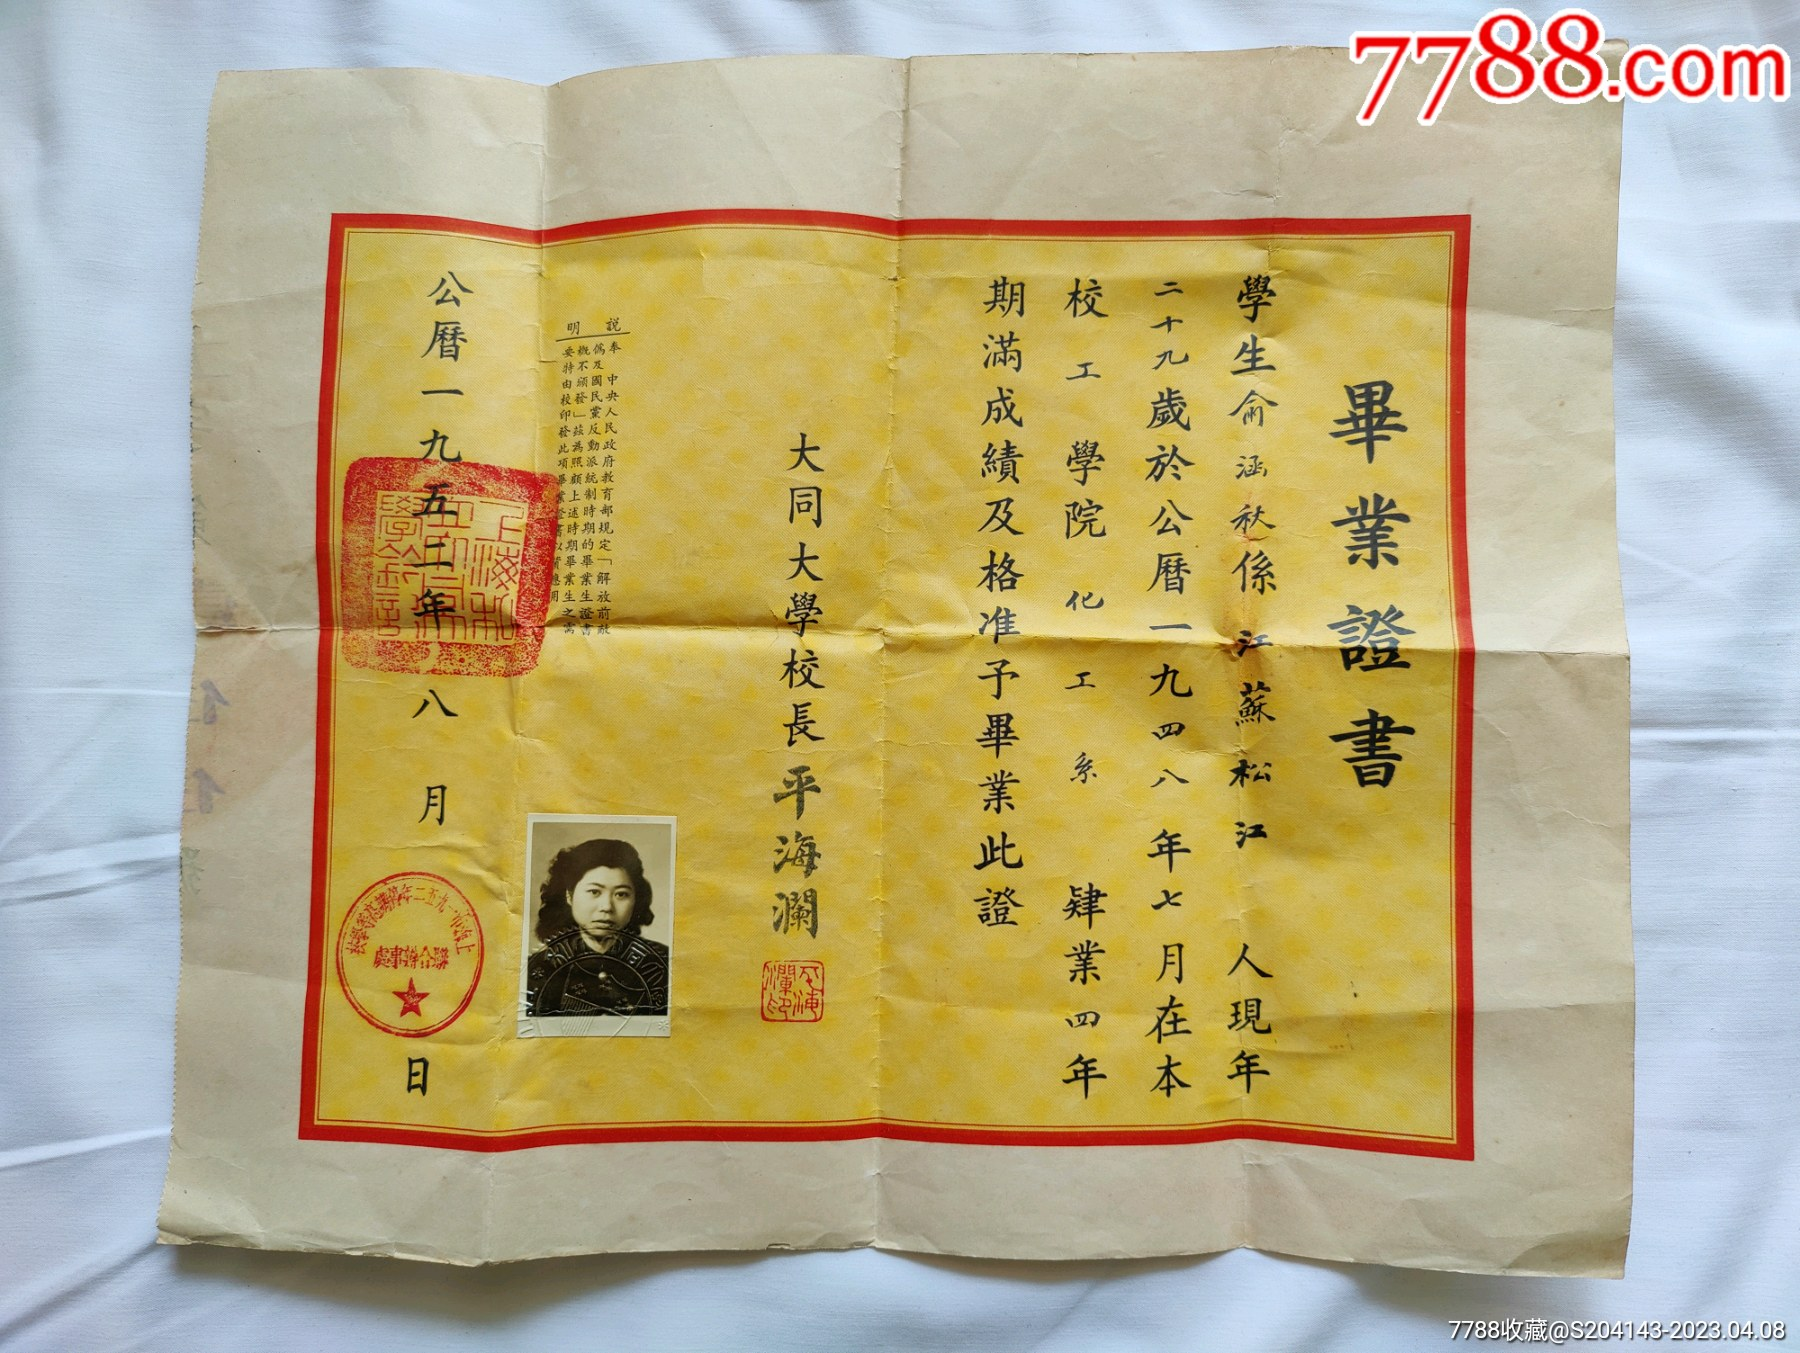 『松江档案信息』平海澜(1885～1960) 松江叶榭镇人。著名英语教育家